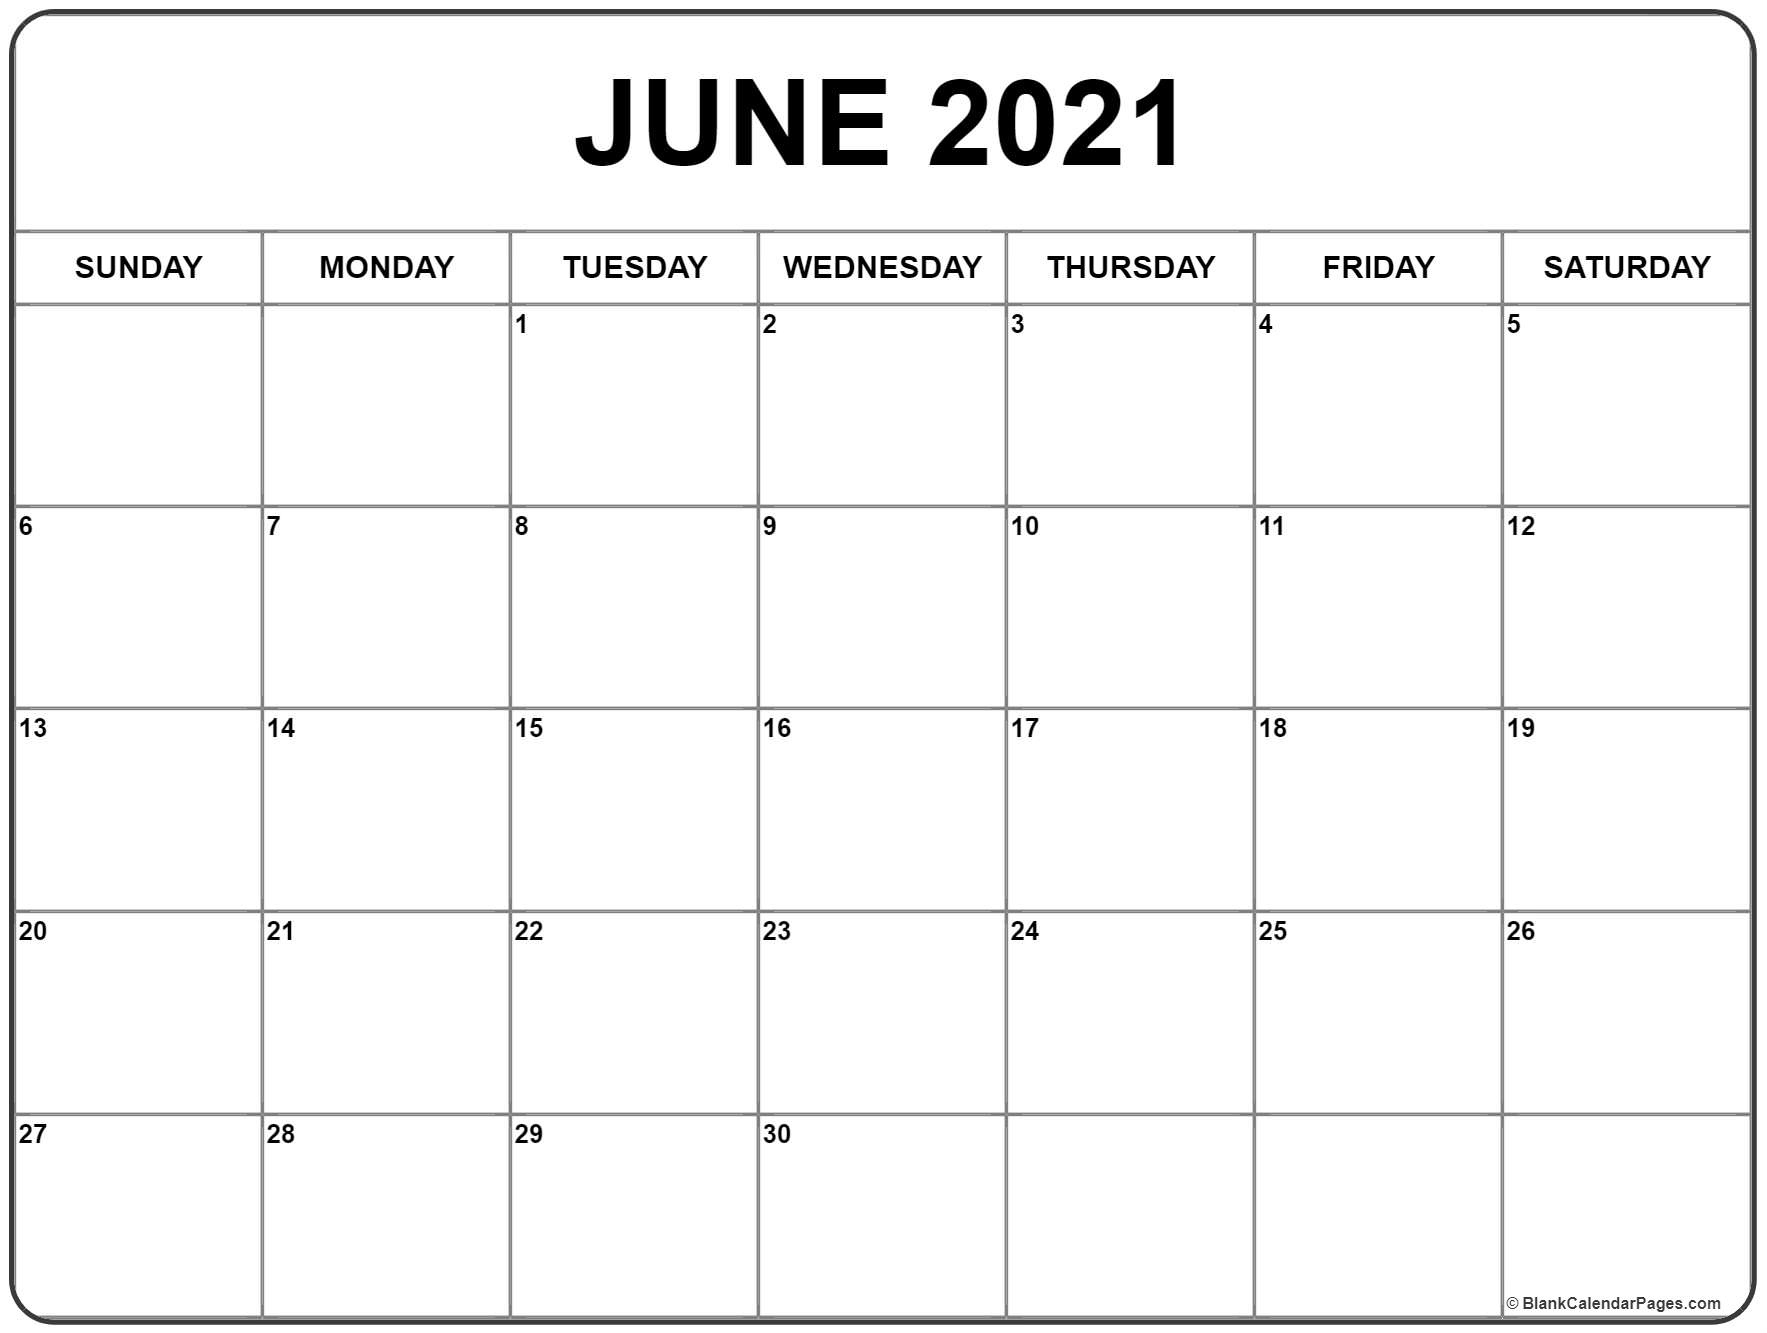 June 2021 Calendar | 51+ Calendar Templates Of 2021 Calendars Calendar August 2020 To June 2021